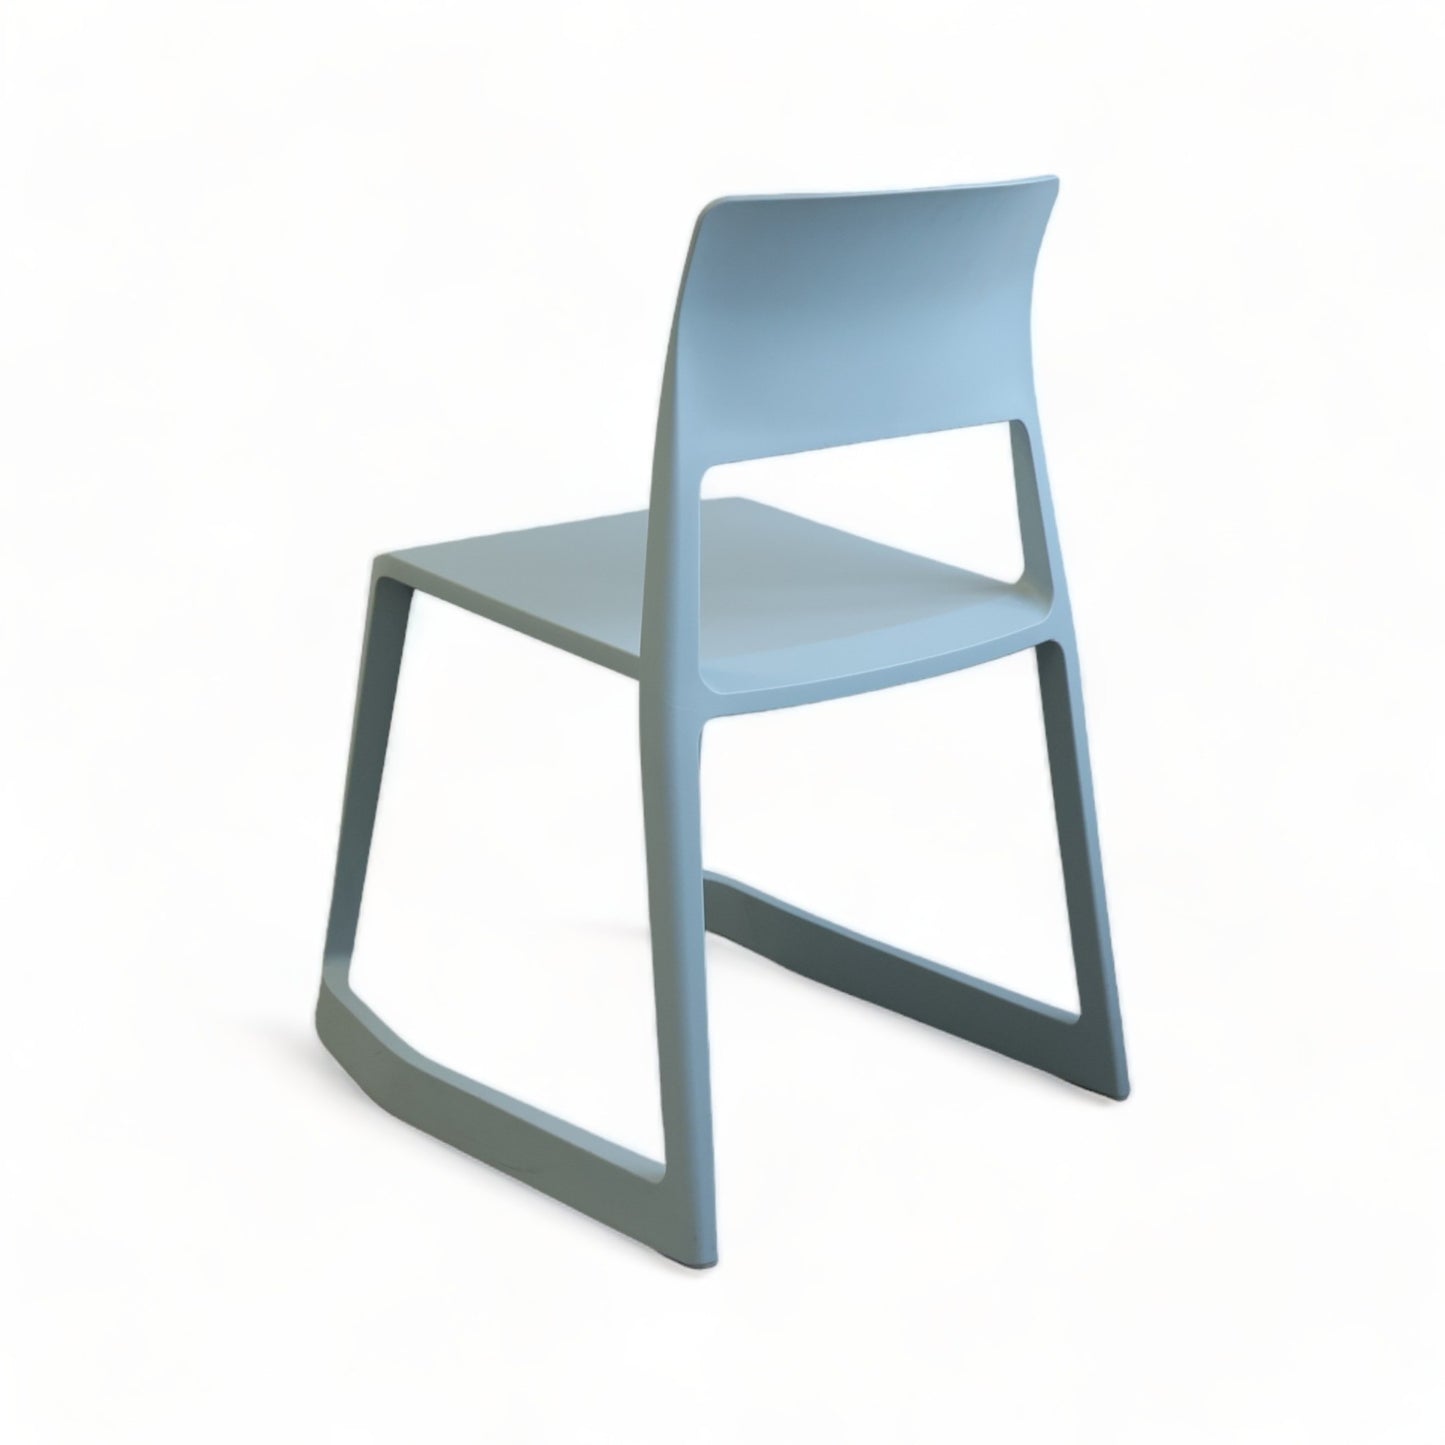 Kvalitetssikret | Vitra TipTon stol designet av Barber og Osgerby